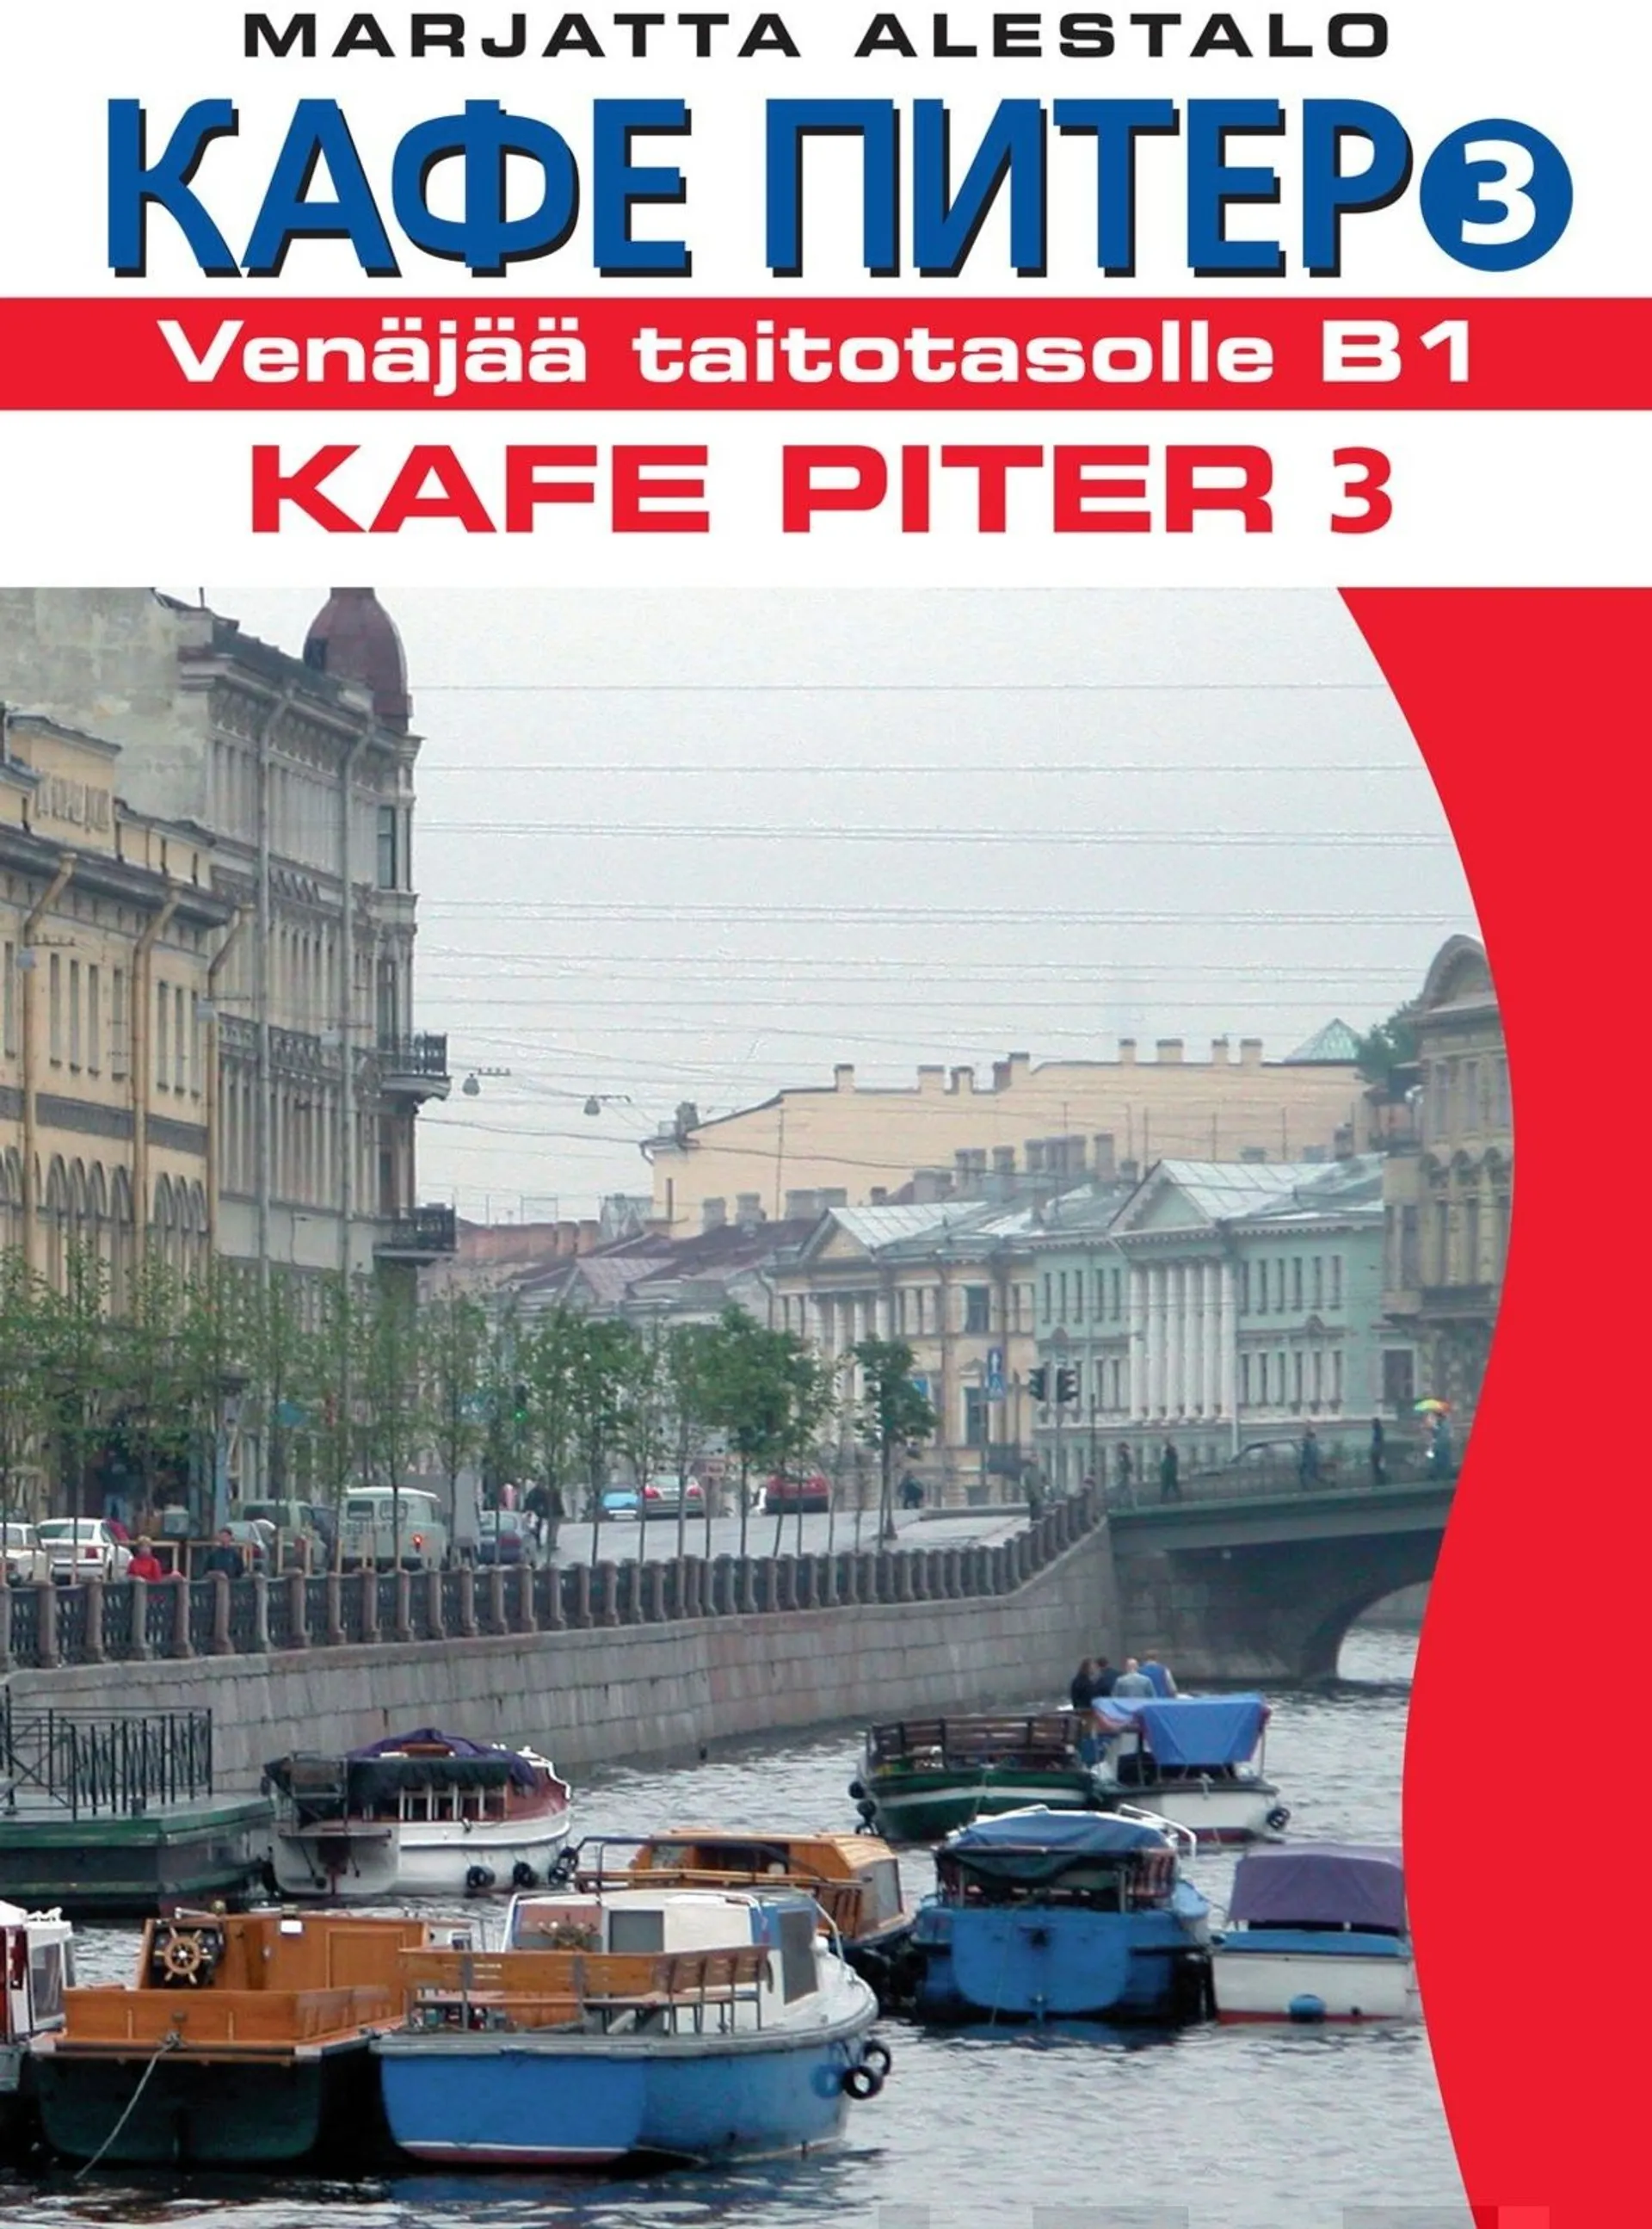 Alestalo, Kafe Piter 3 - Venäjää taitotasolle B1